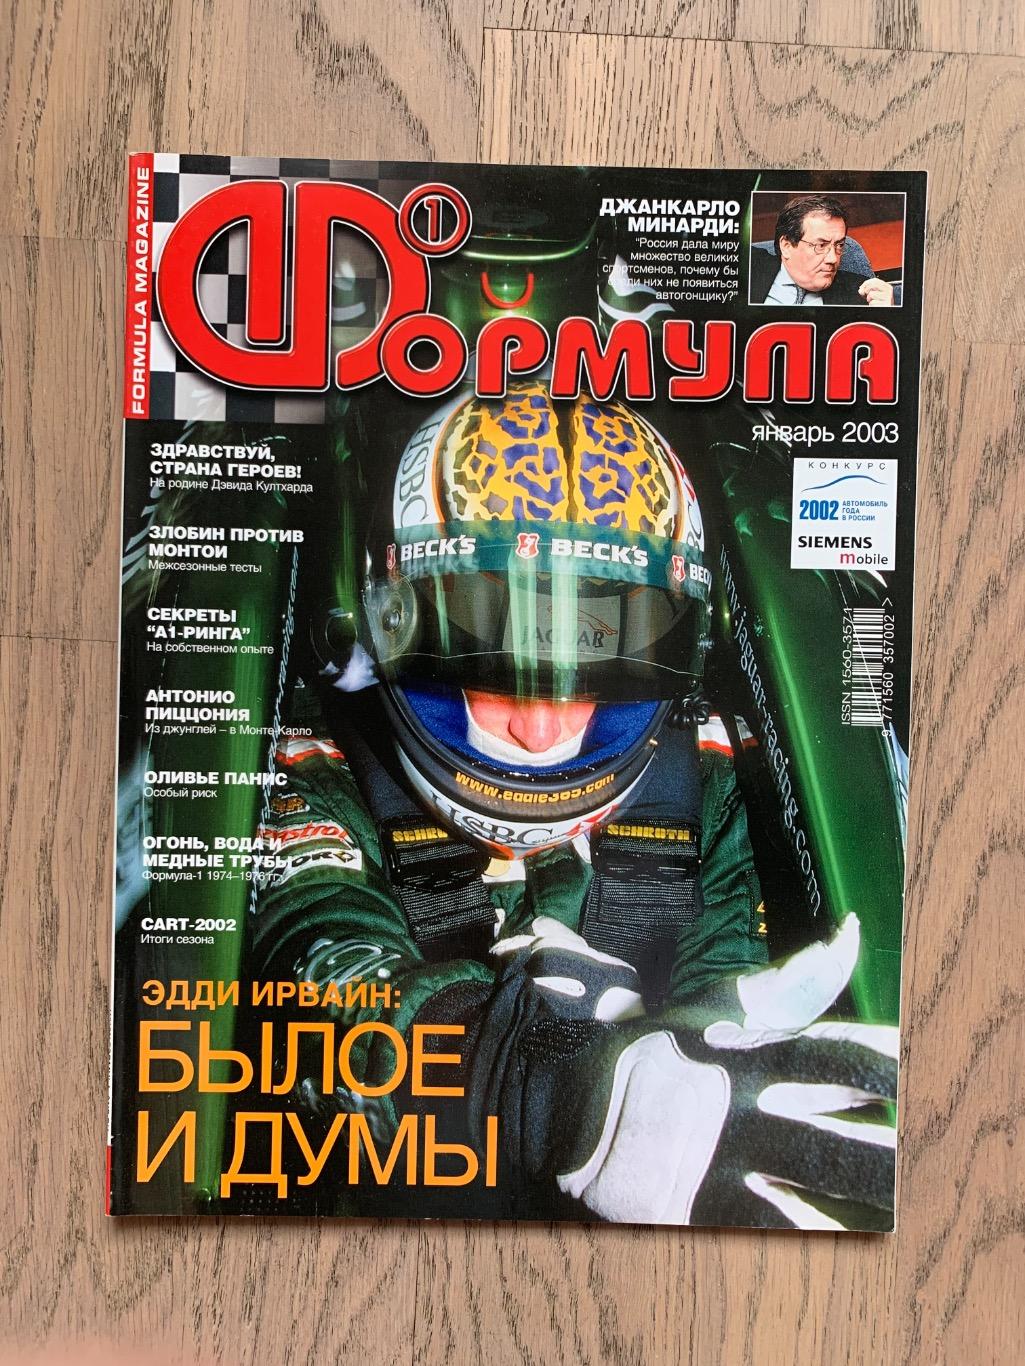 Журнал Формула 1 (Formula Magazine) / январь 2003